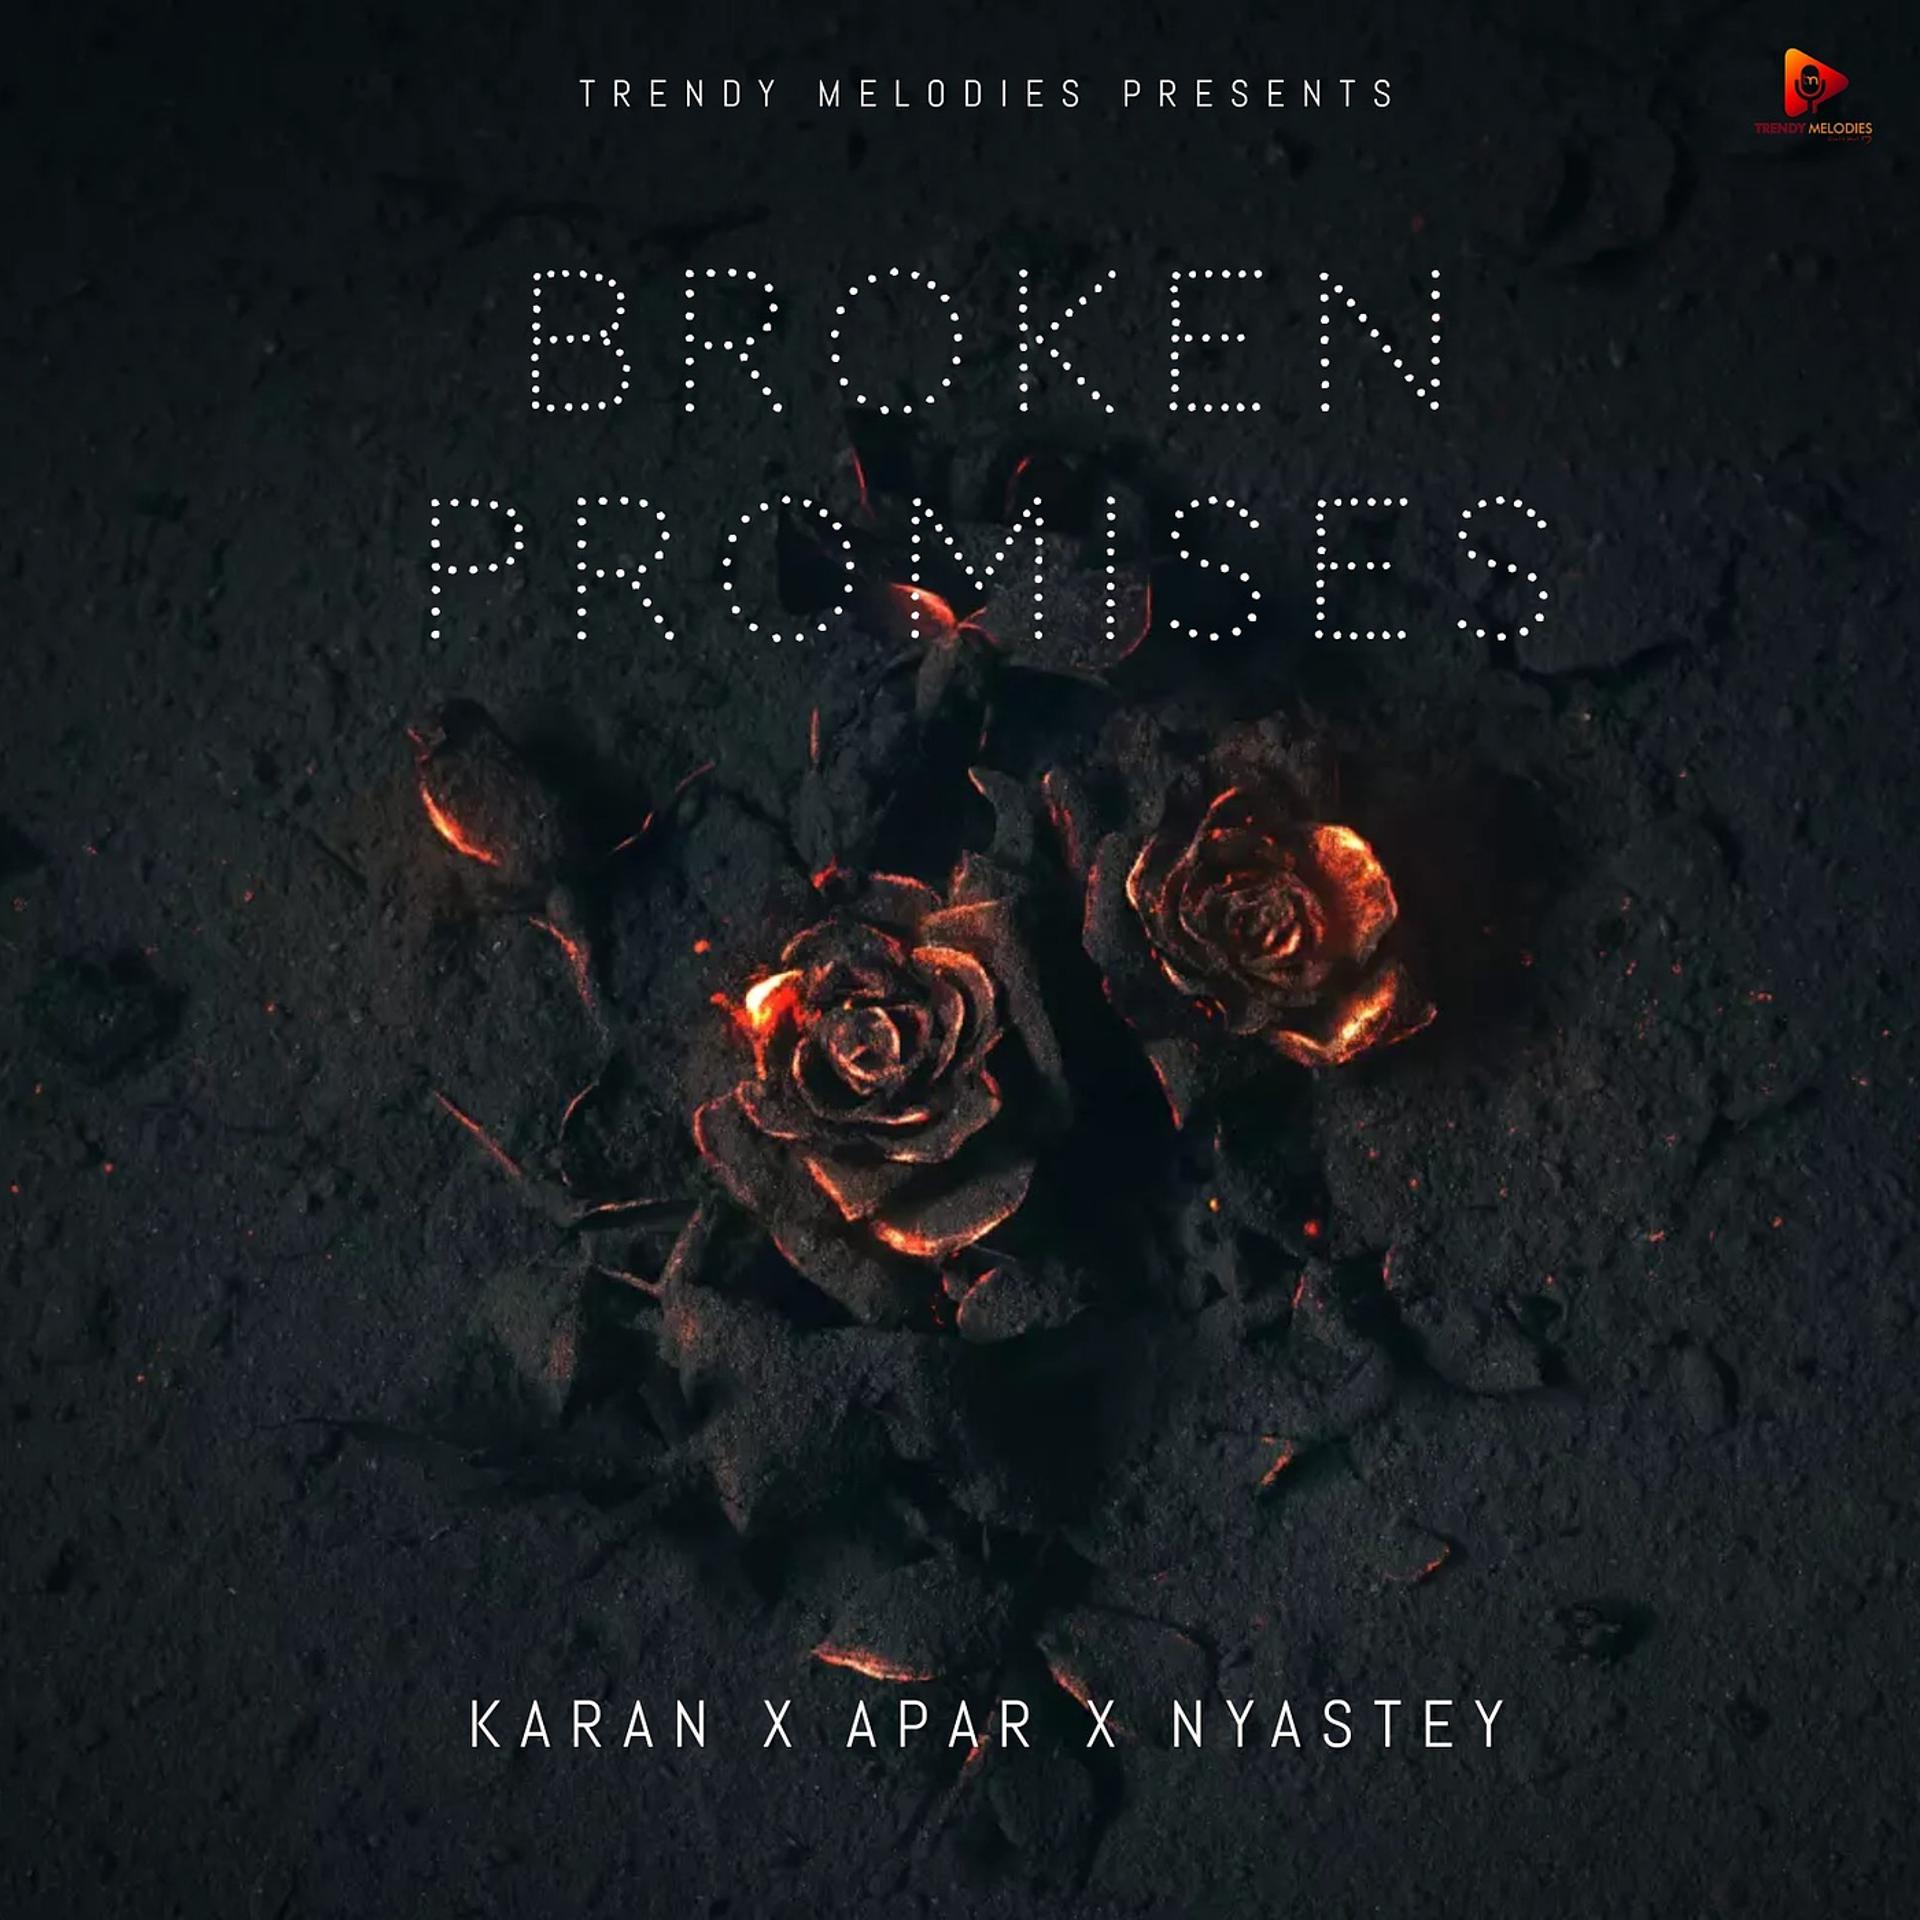 Постер альбома Broken Promises